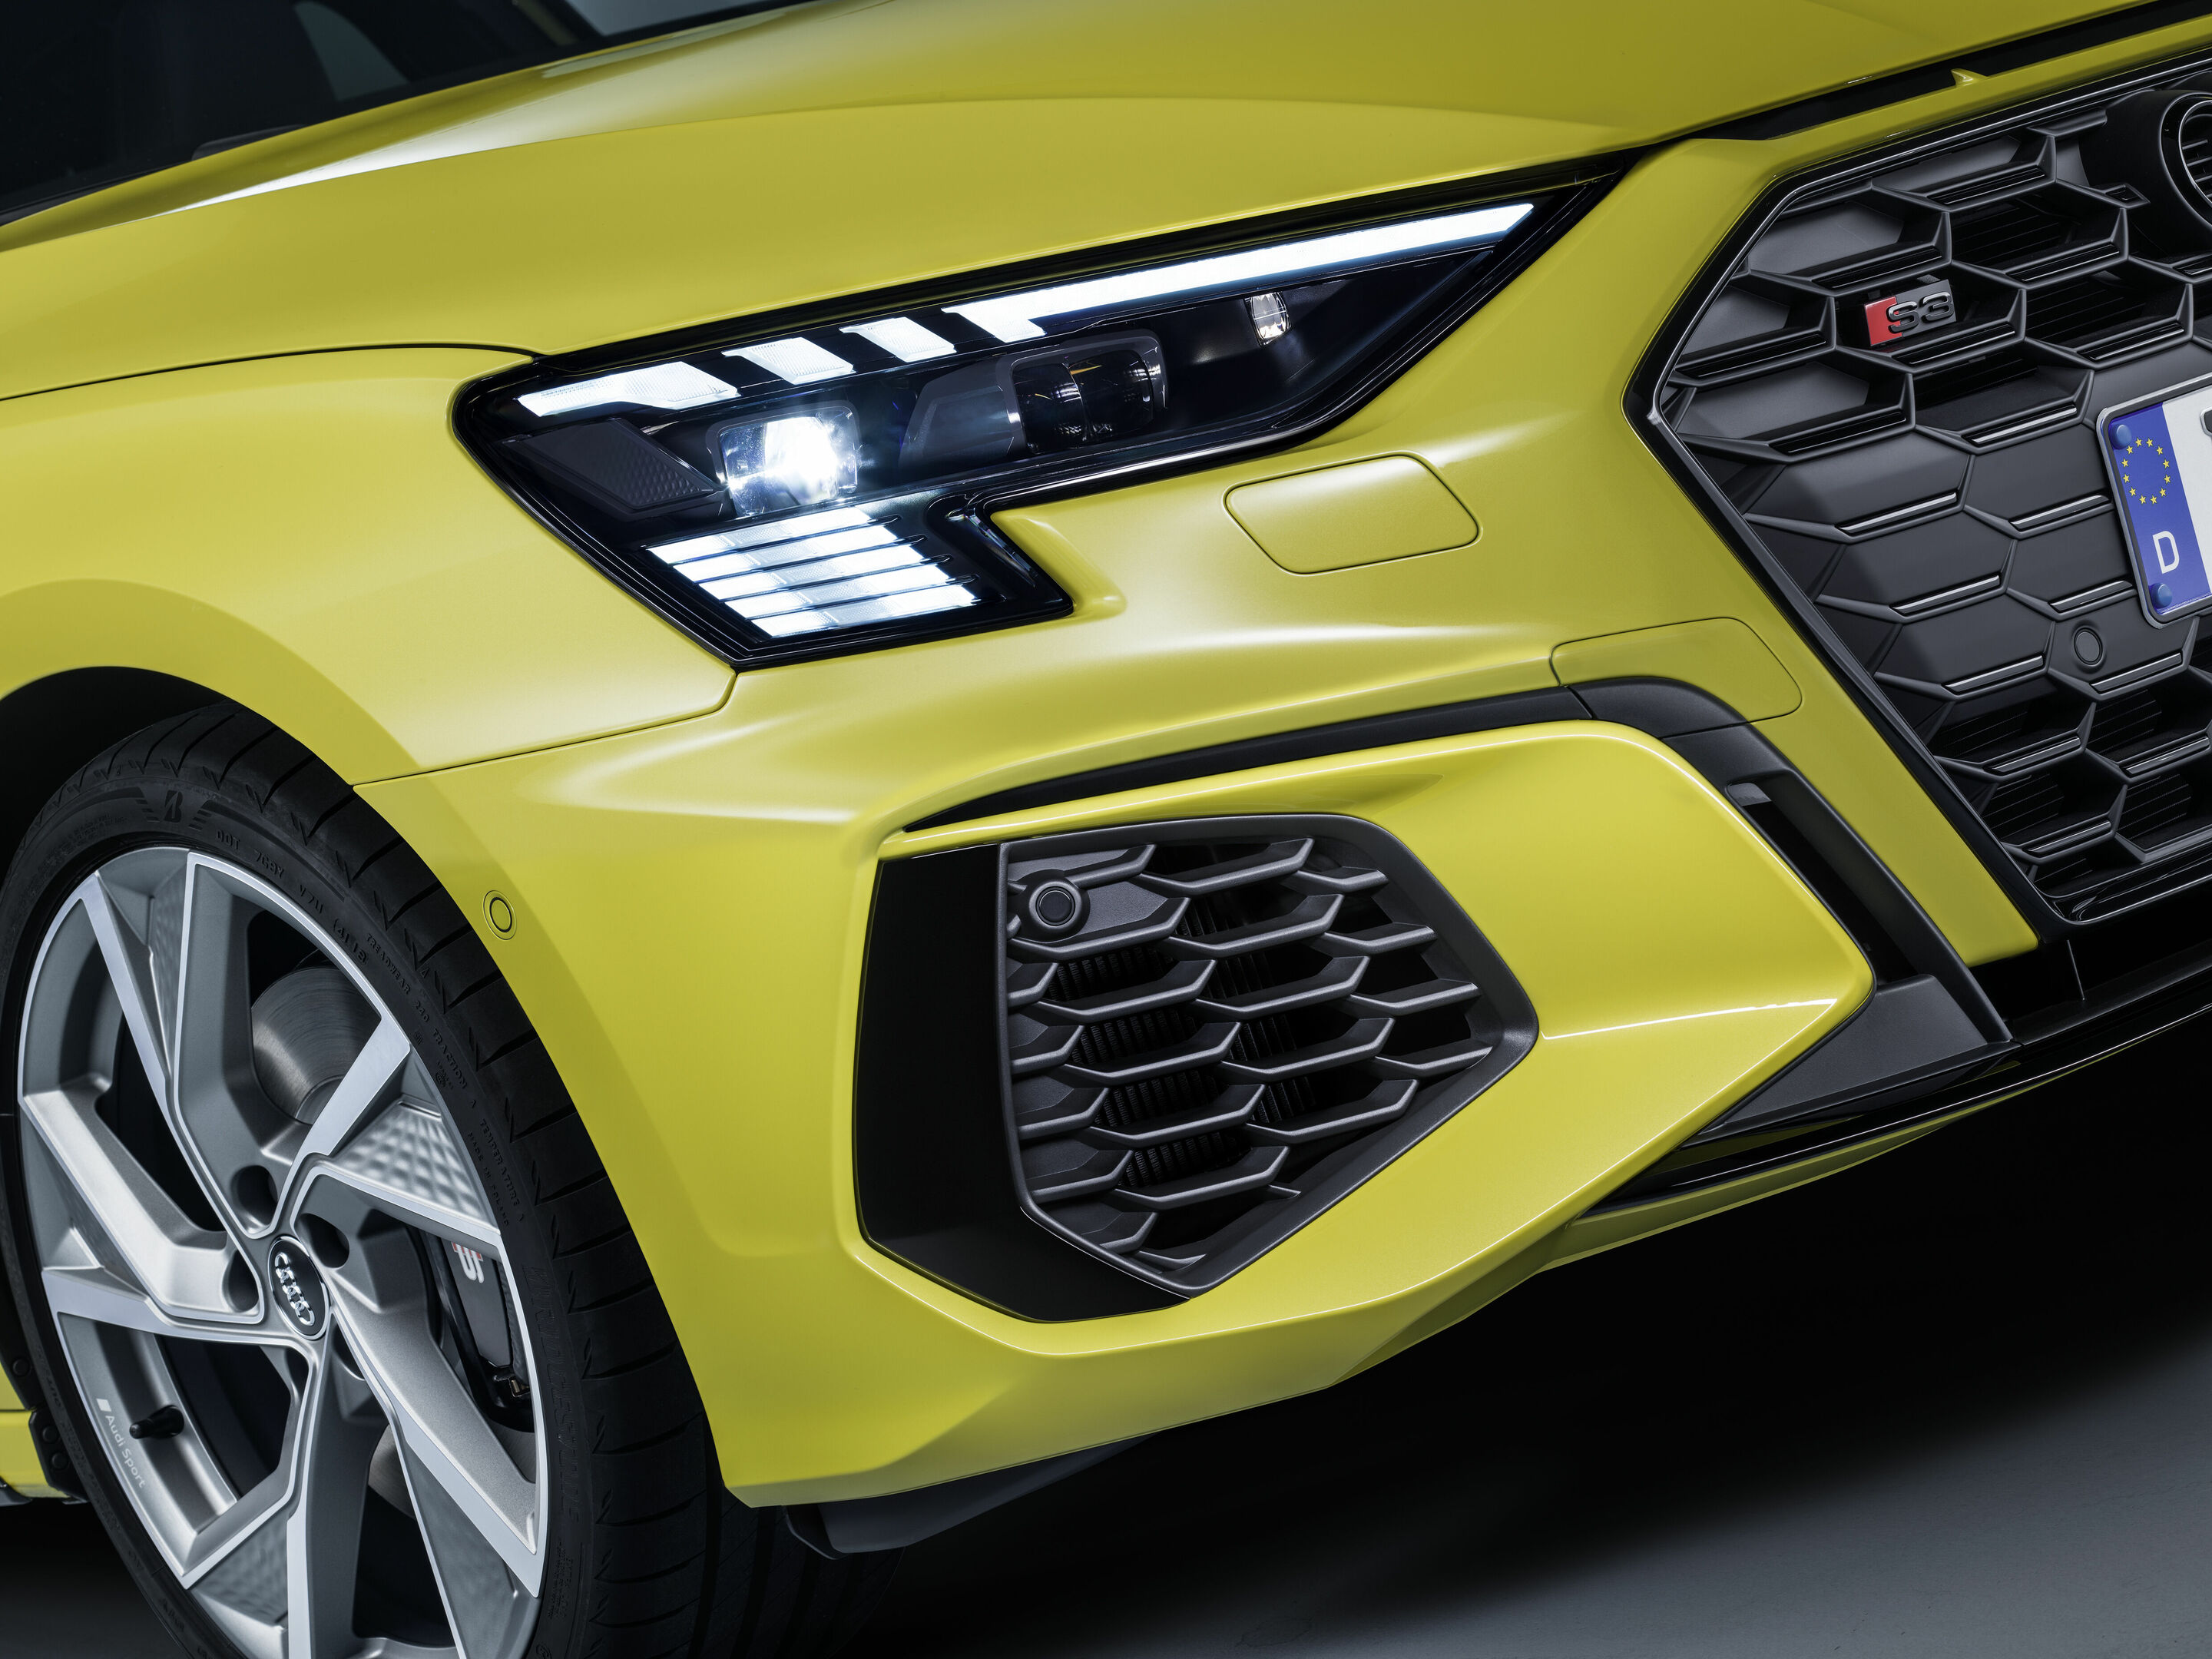 Audi A5 Mileage (13-19 km/l) - A5 Petrol and Diesel Mileage - CarWale